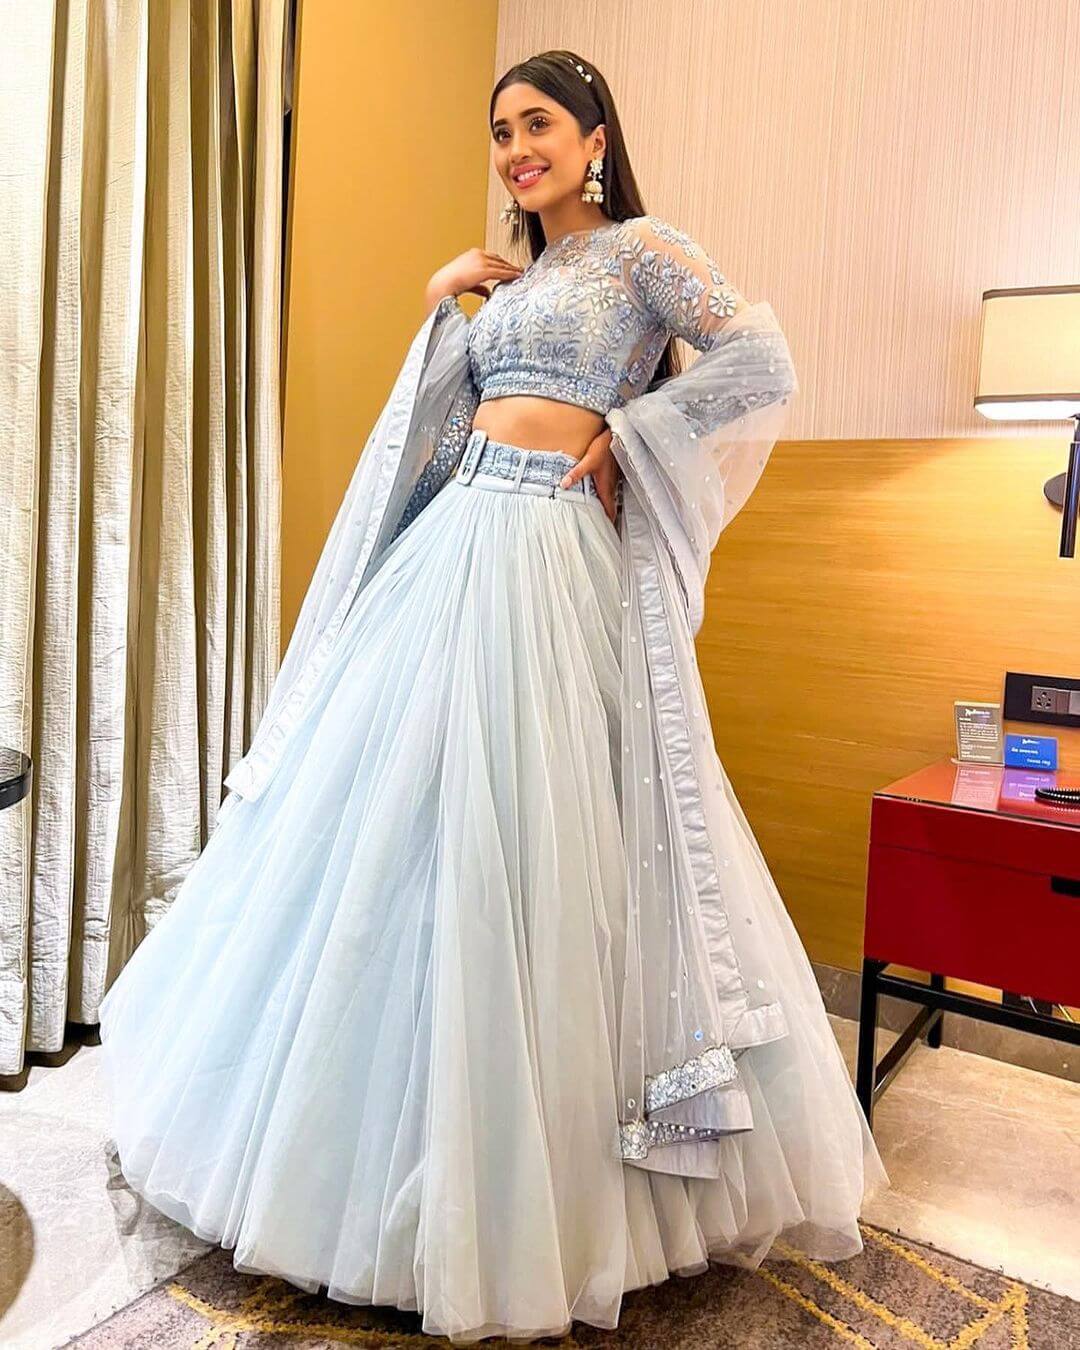 Shivangi Look Dazzling In Ivory Blue Lehenga Outfit Shivangi Joshi Stylish And Traditional Outfit